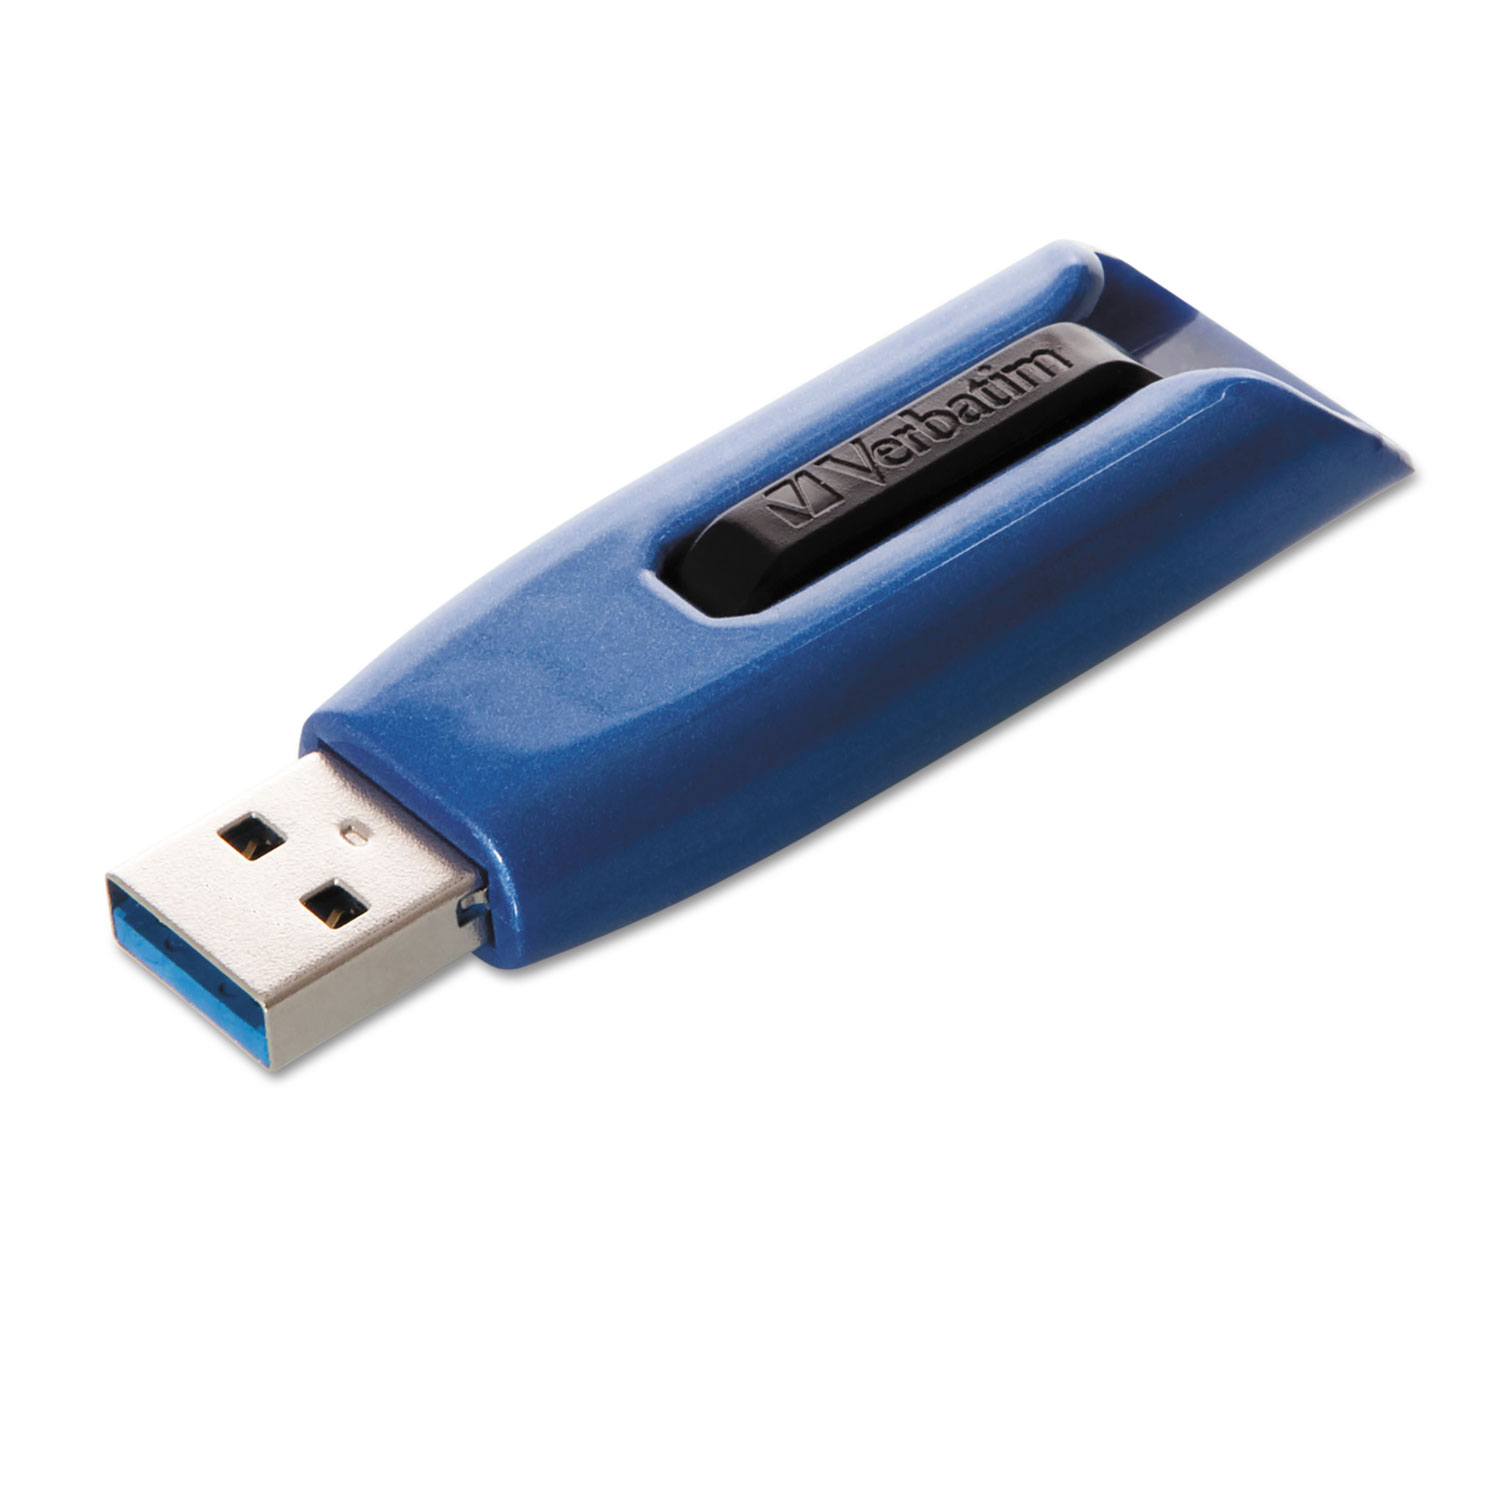 V3 Max USB 3.0 Drive, 16GB, Blue